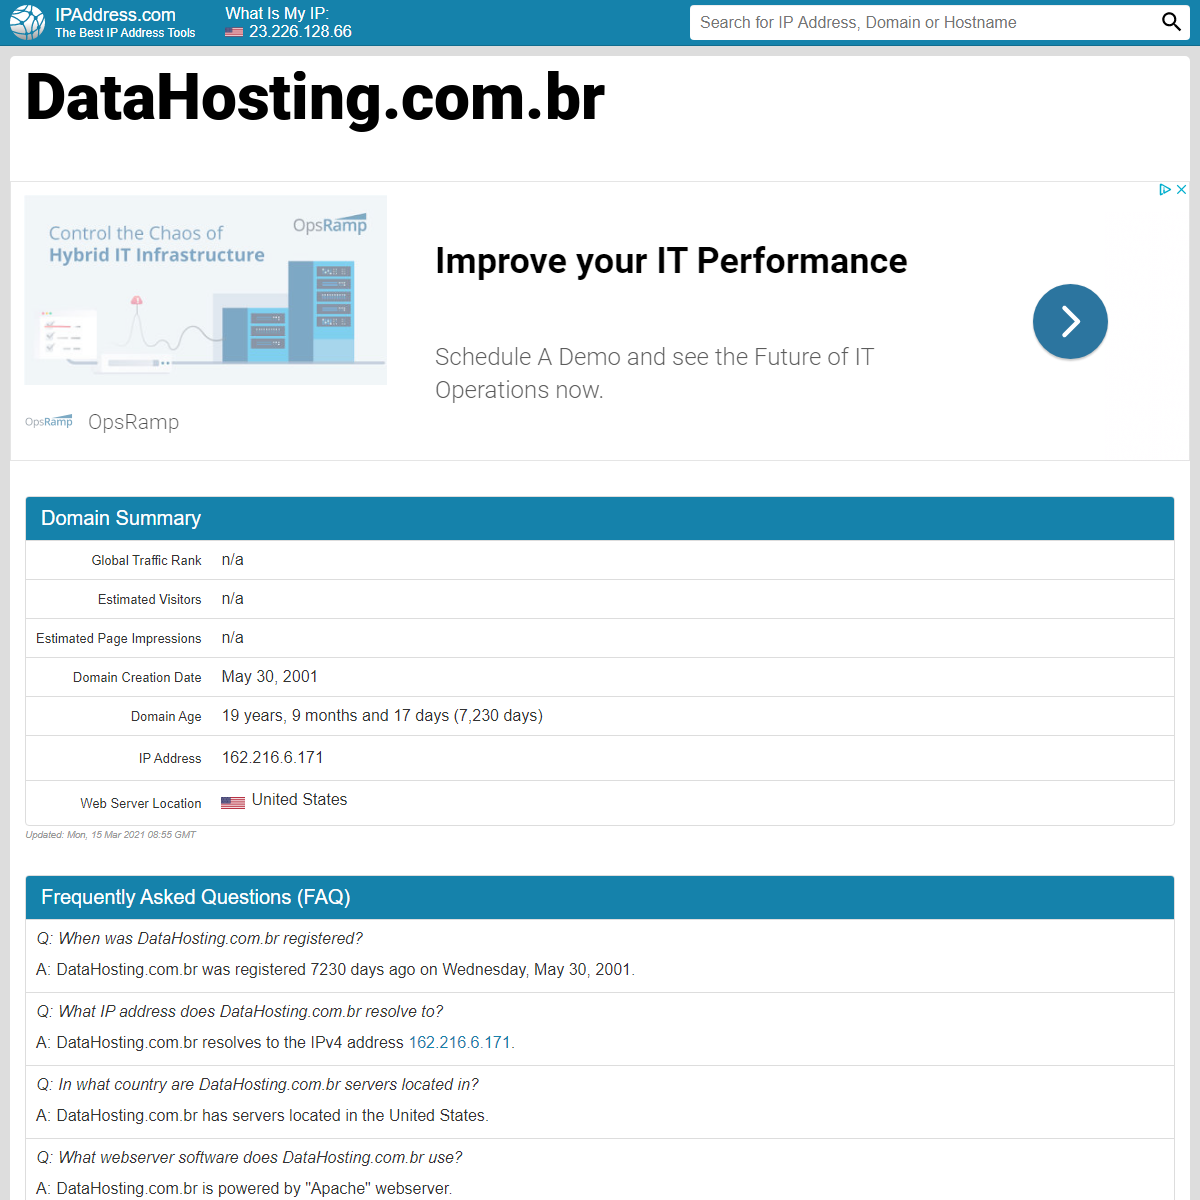 A complete backup of https://com.br.ipaddress.com/datahosting.com.br